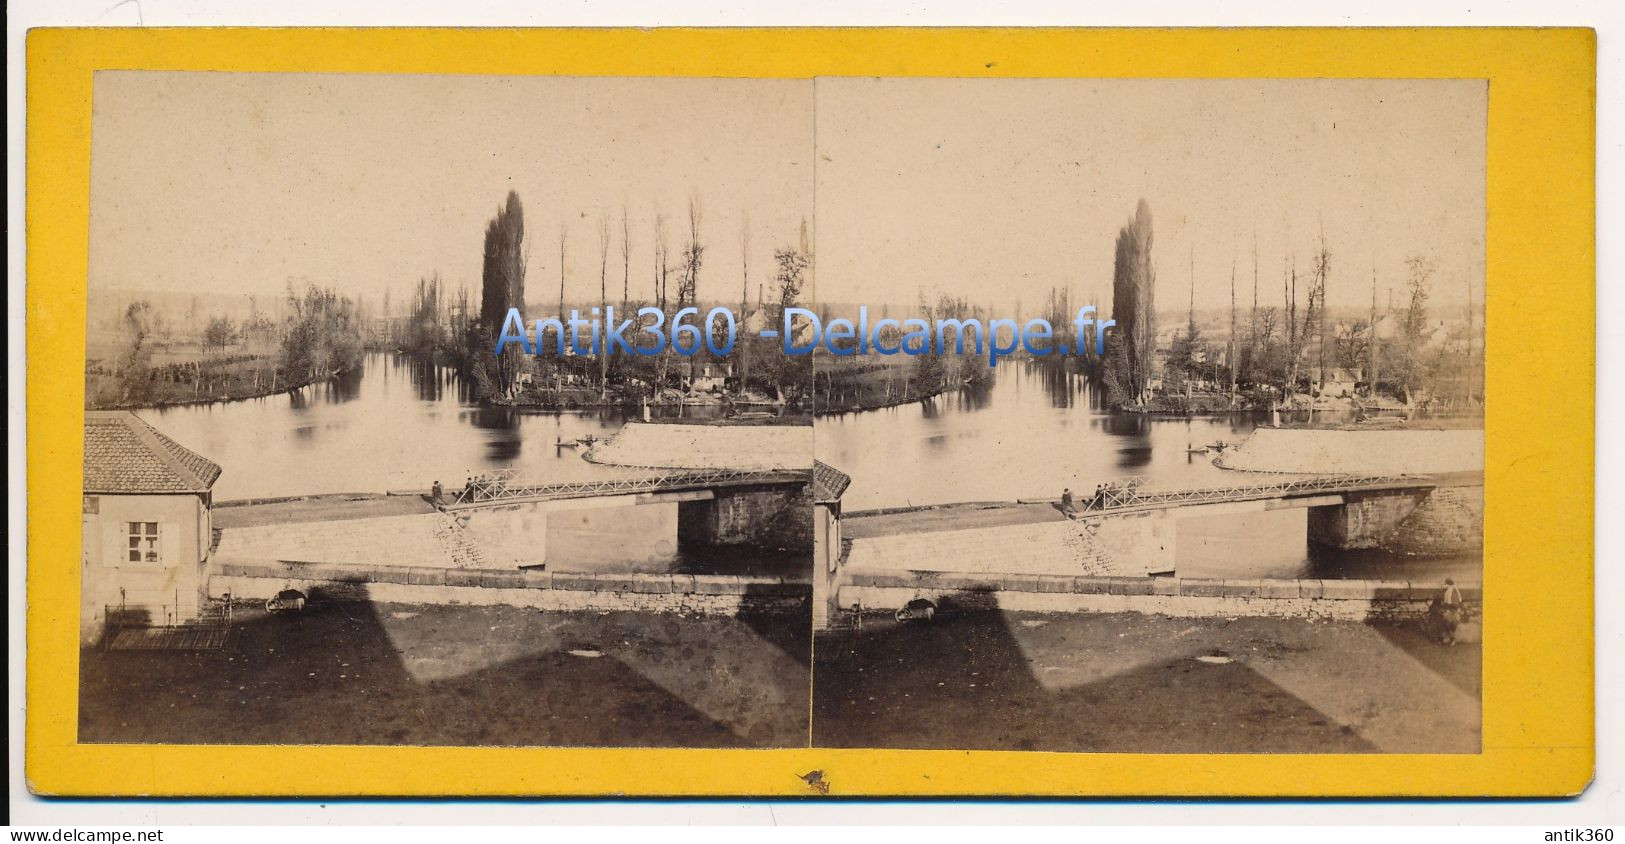 Photographie Ancienne Vue Stéréoscopique Circa 1860 SARREGUEMINES Embouchure De La Blies - Stereoscopic